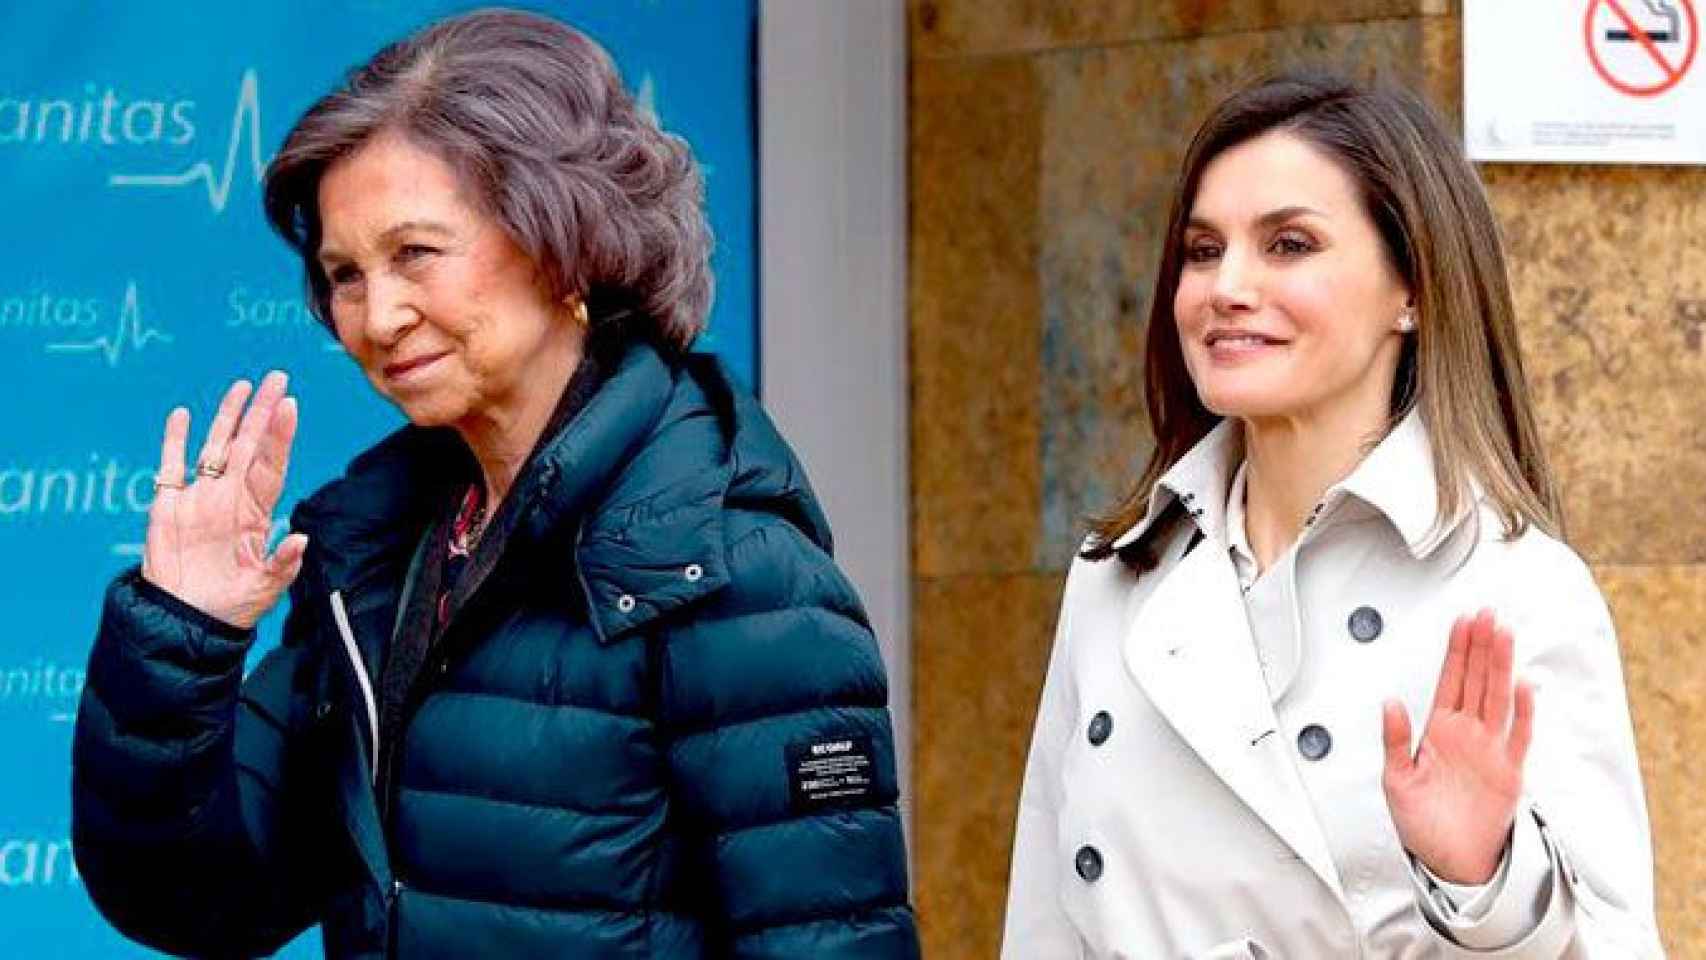 La Reina Letizia, junto a la Reina emérita Sofía, a su llegada para visitar al Rey emérito Juan Carlos en el hospital madrileño donde ha sido operado / EFE